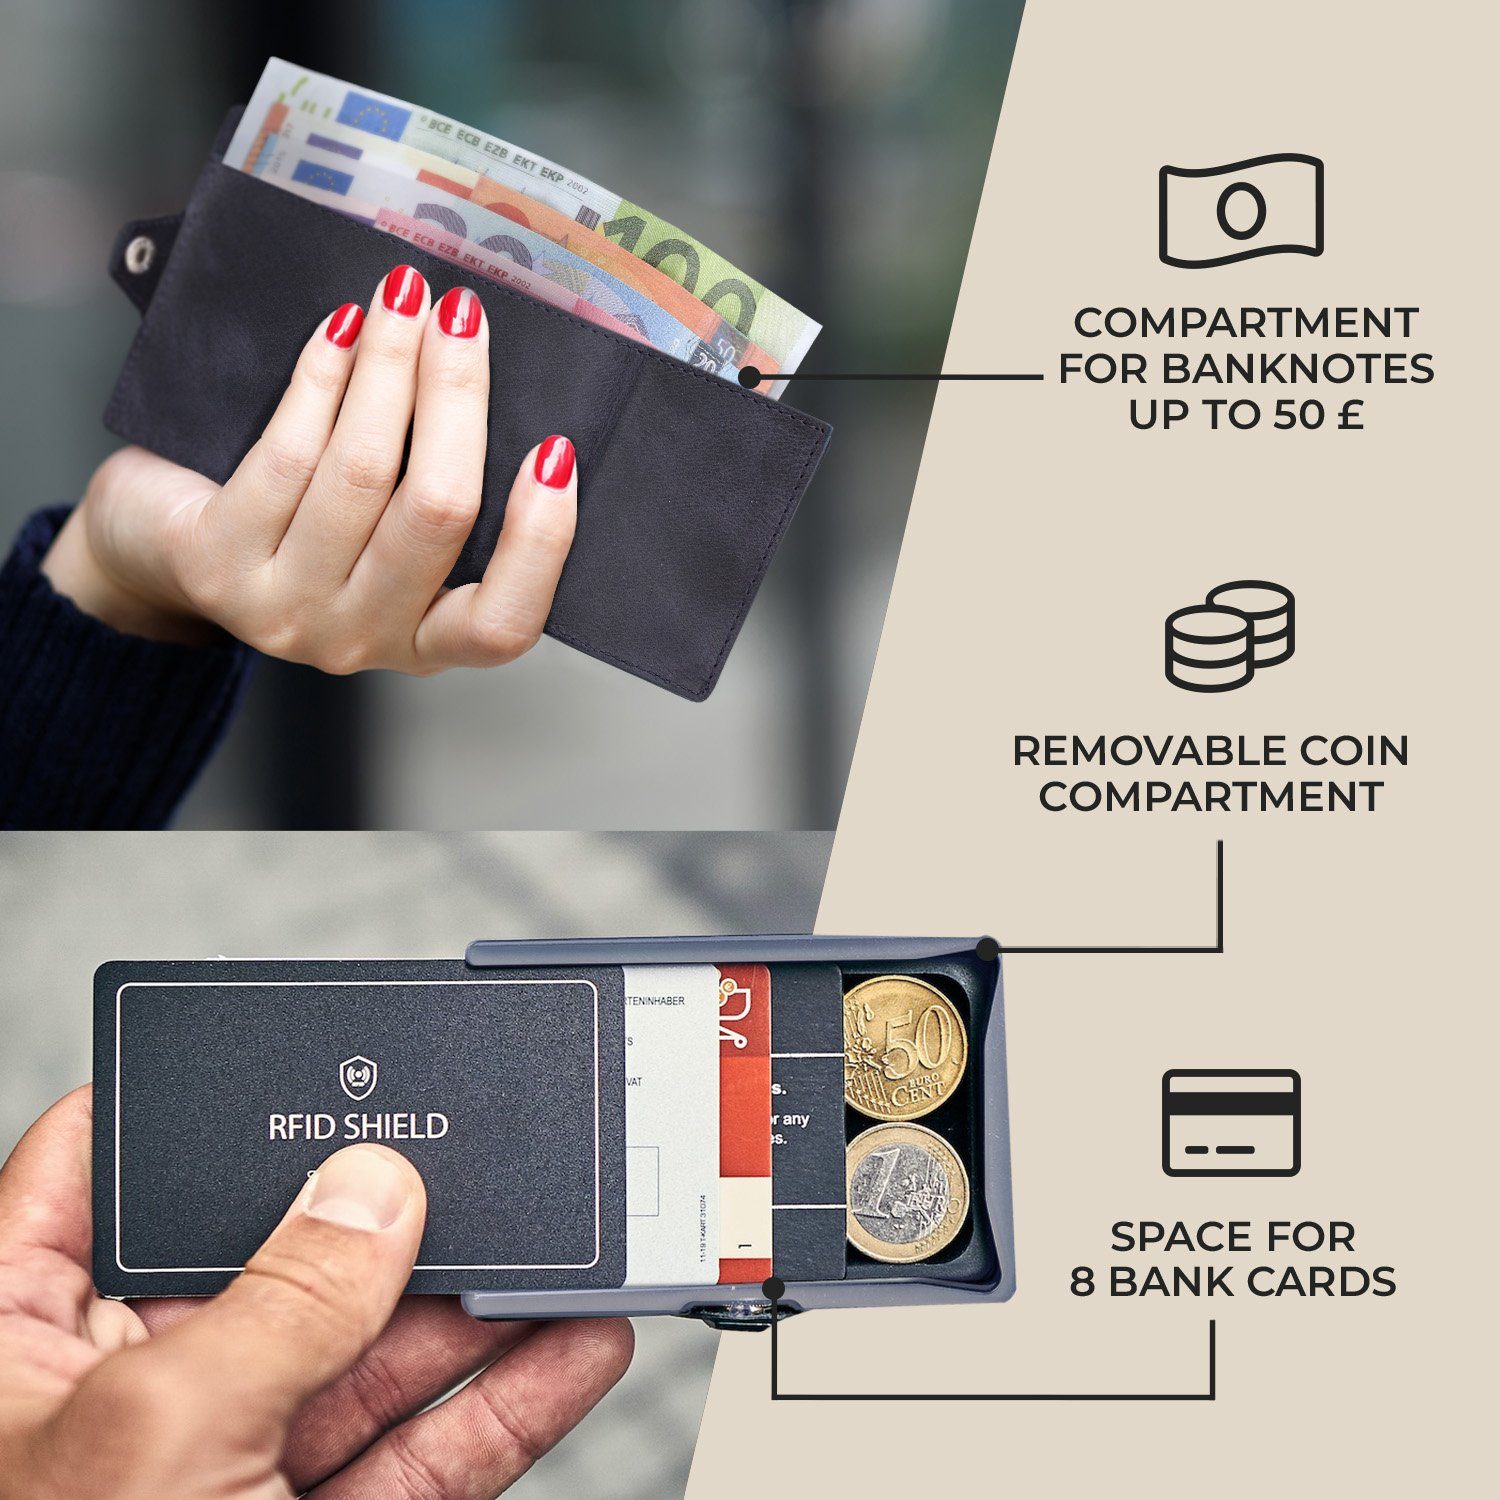 RFID-Schutz Damen Portemonnaie Bankkarten Wallet Münzen ZNAP Slimpuro (Set), Geldbörse Geldscheine Ozeanblau Herren